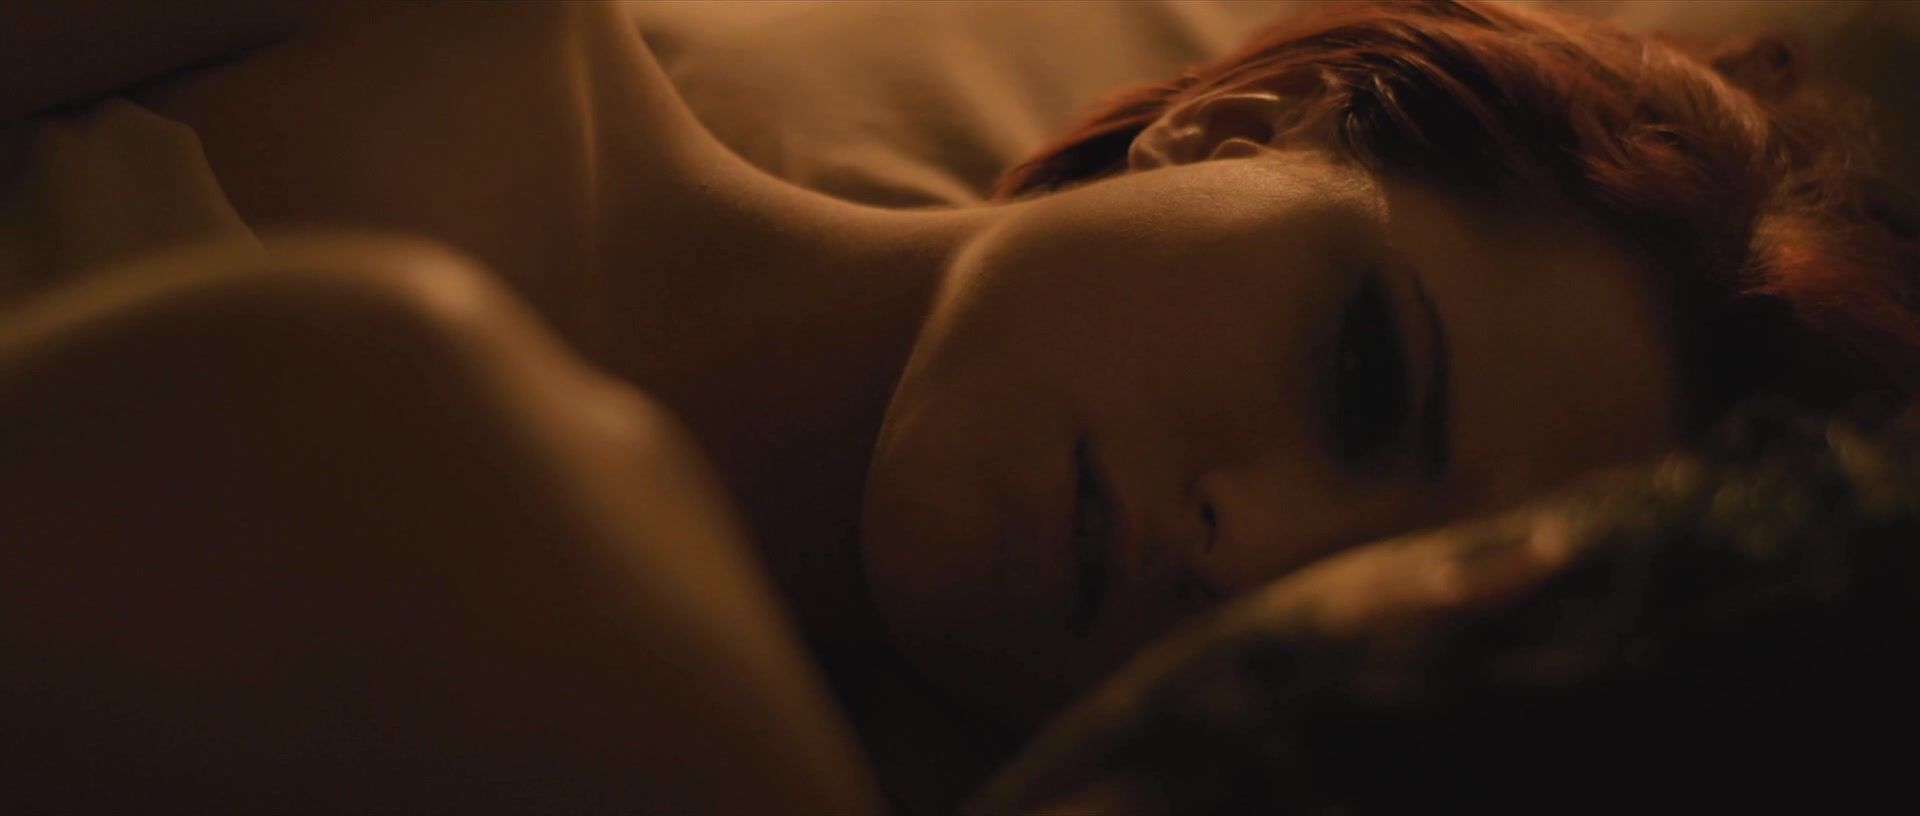 Brazil Evan Rachel Wood nude - The Necessary Death of Charlie Countryman (2013) BaDoinkVR